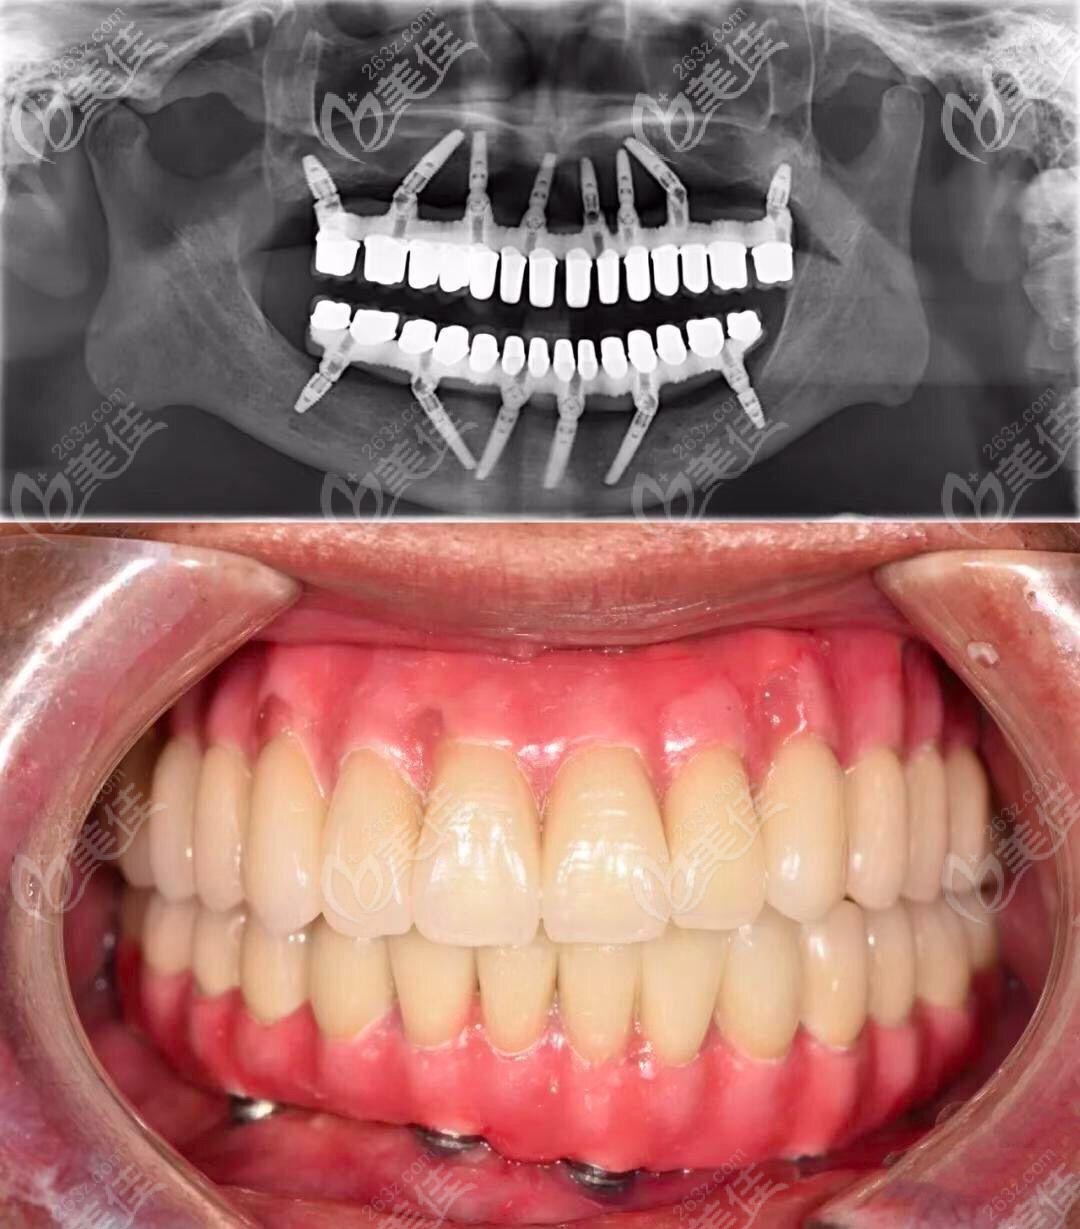 就可以恢复半口/全口牙齿的咀嚼功能,相比传统的活动假牙,种植牙很像